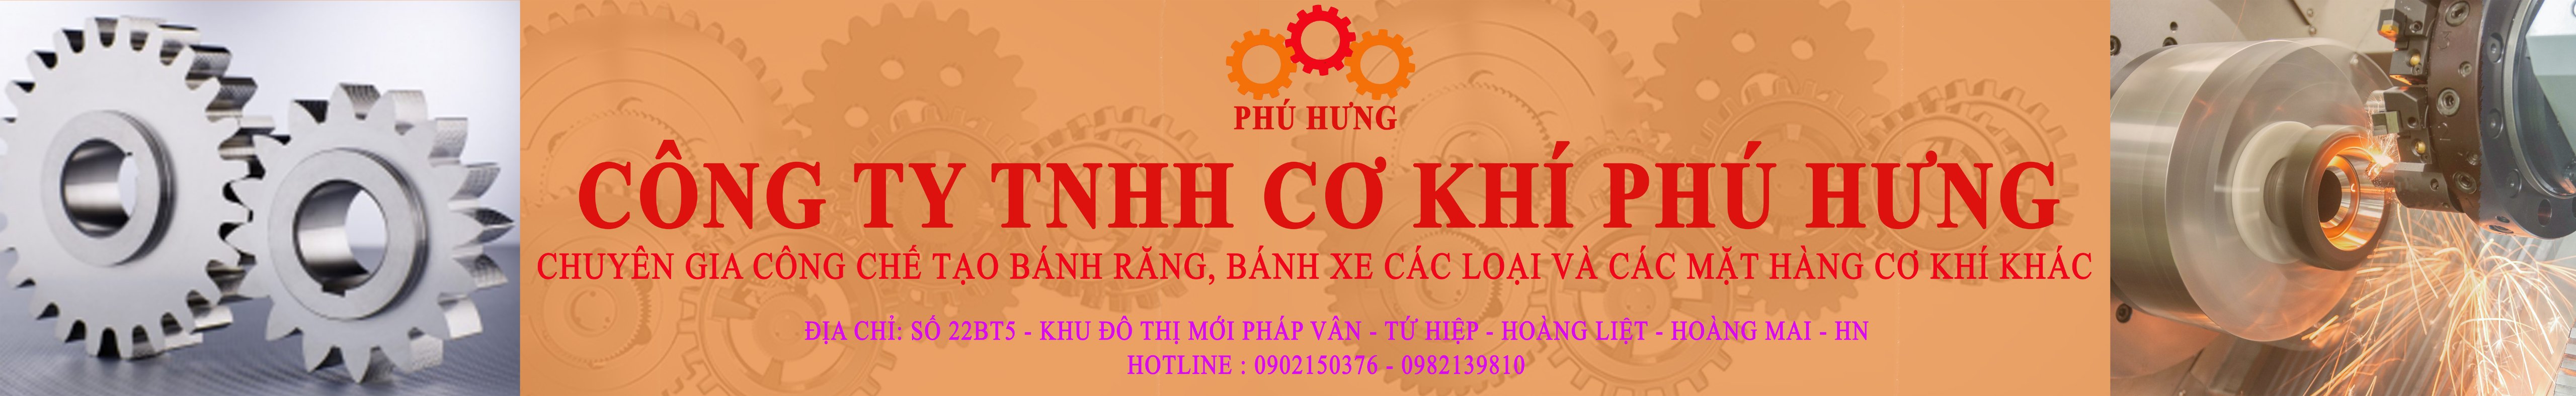 Công ty TNHH Cơ Khí Phú Hưng